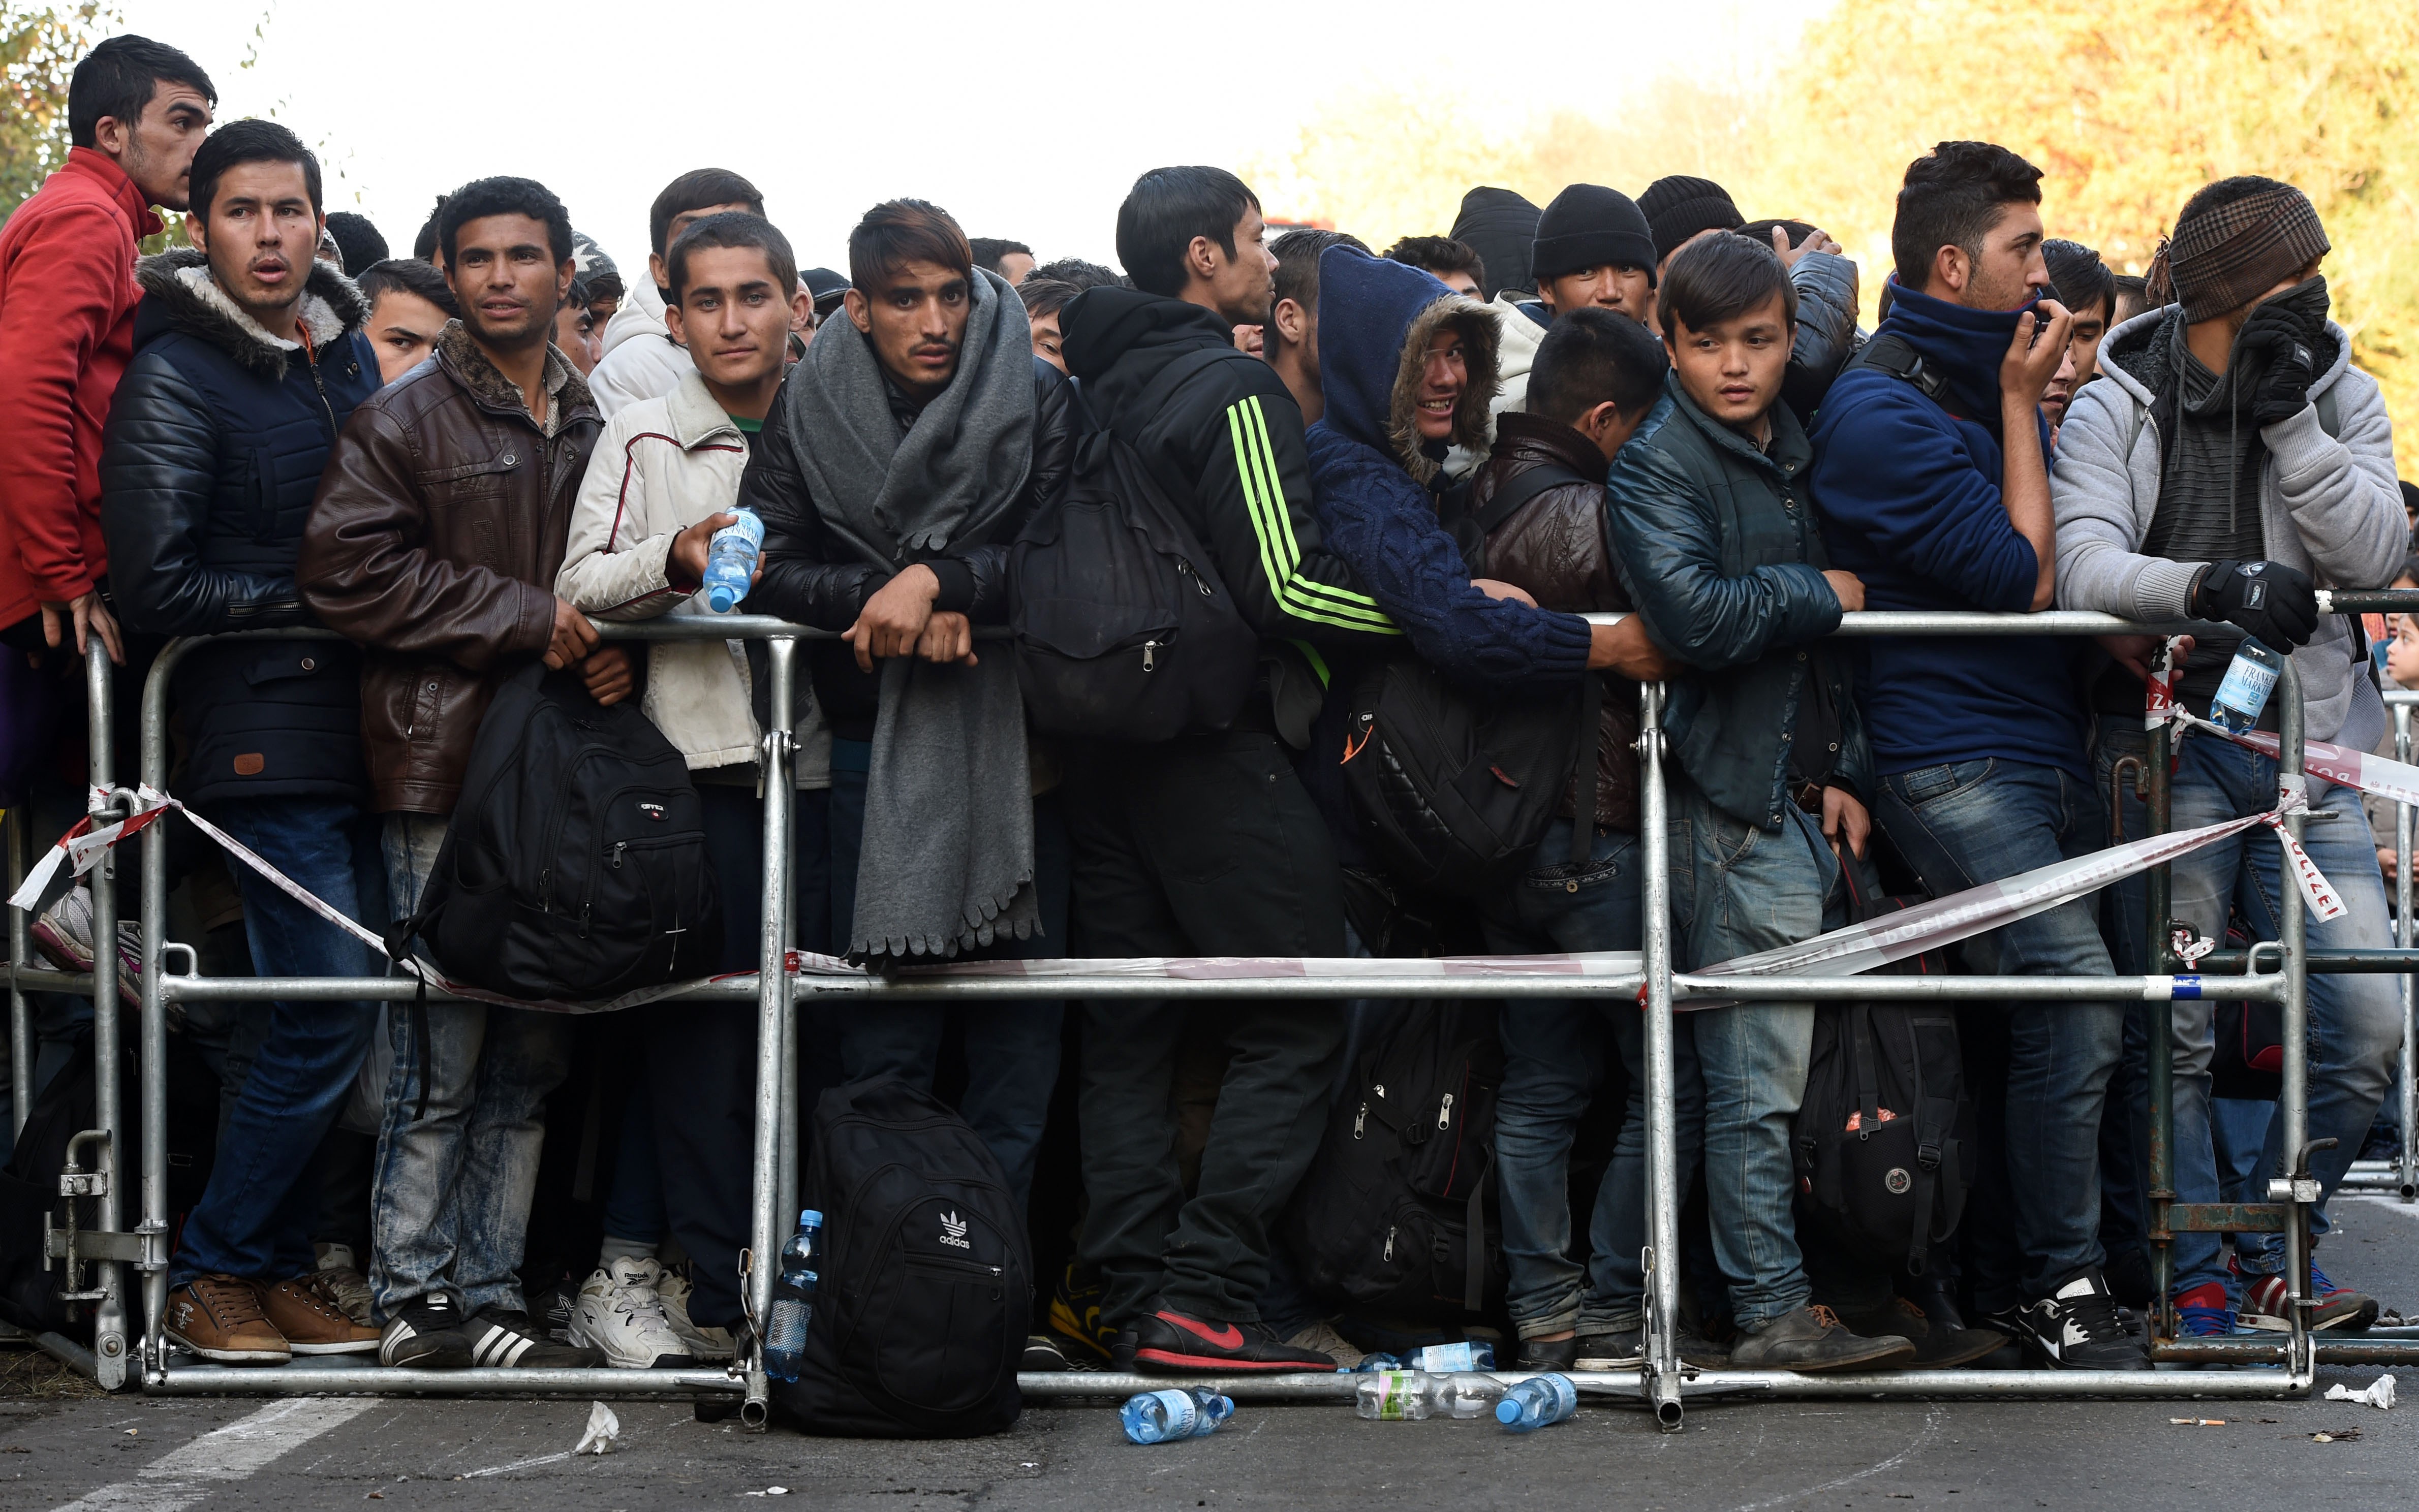 Unions-Innenexperte will Flüchtlingsgrenze von 500.000 pro Jahr